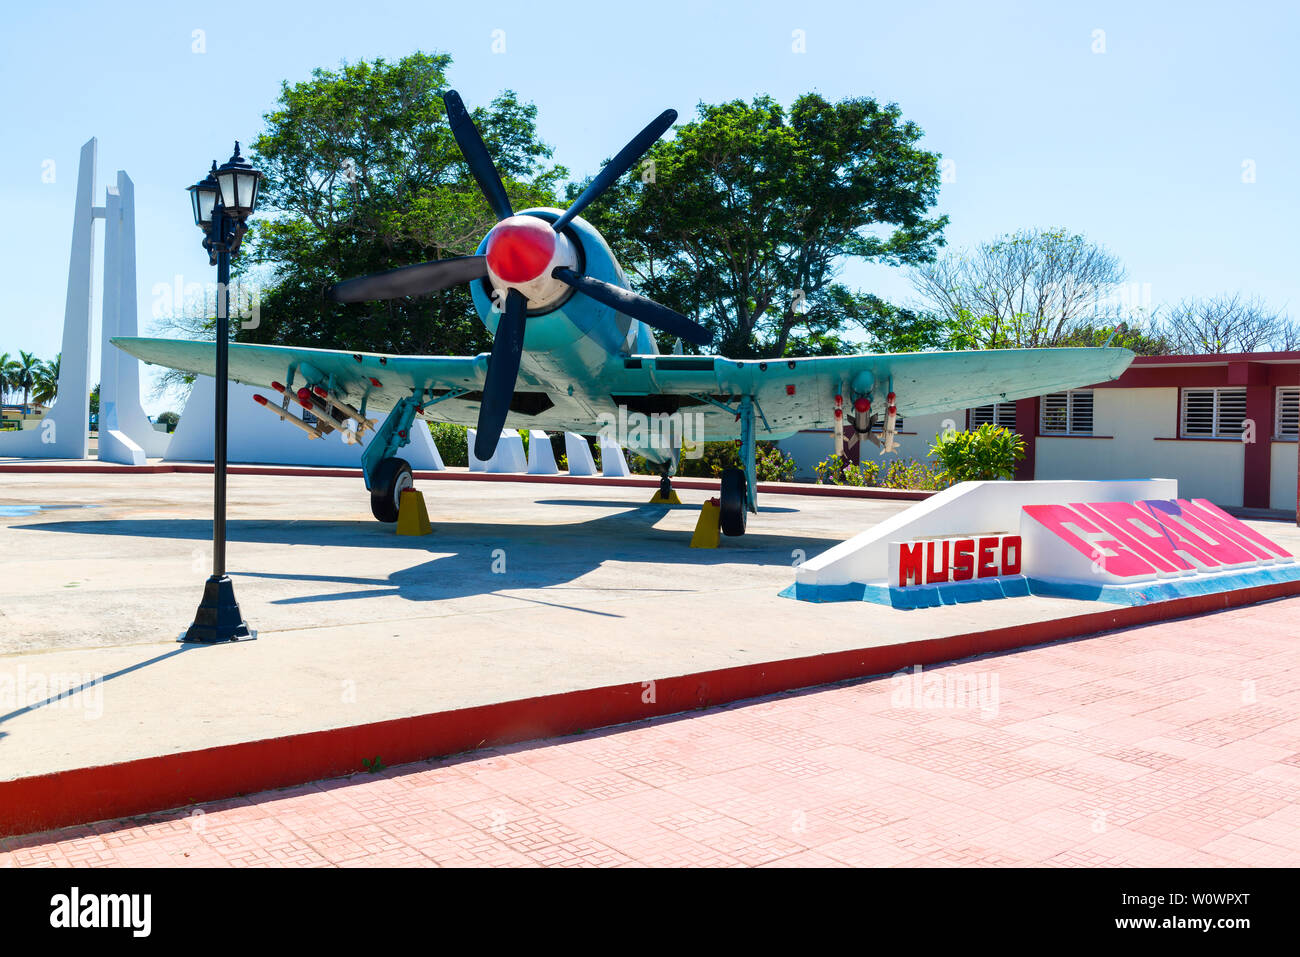 Hawker Sea Fury (avion de chasse britannique) stationné à l'entrée du Museo de Playa Giron ou Musée de la Baie des Cochons, Playa Giron, Cuba Banque D'Images